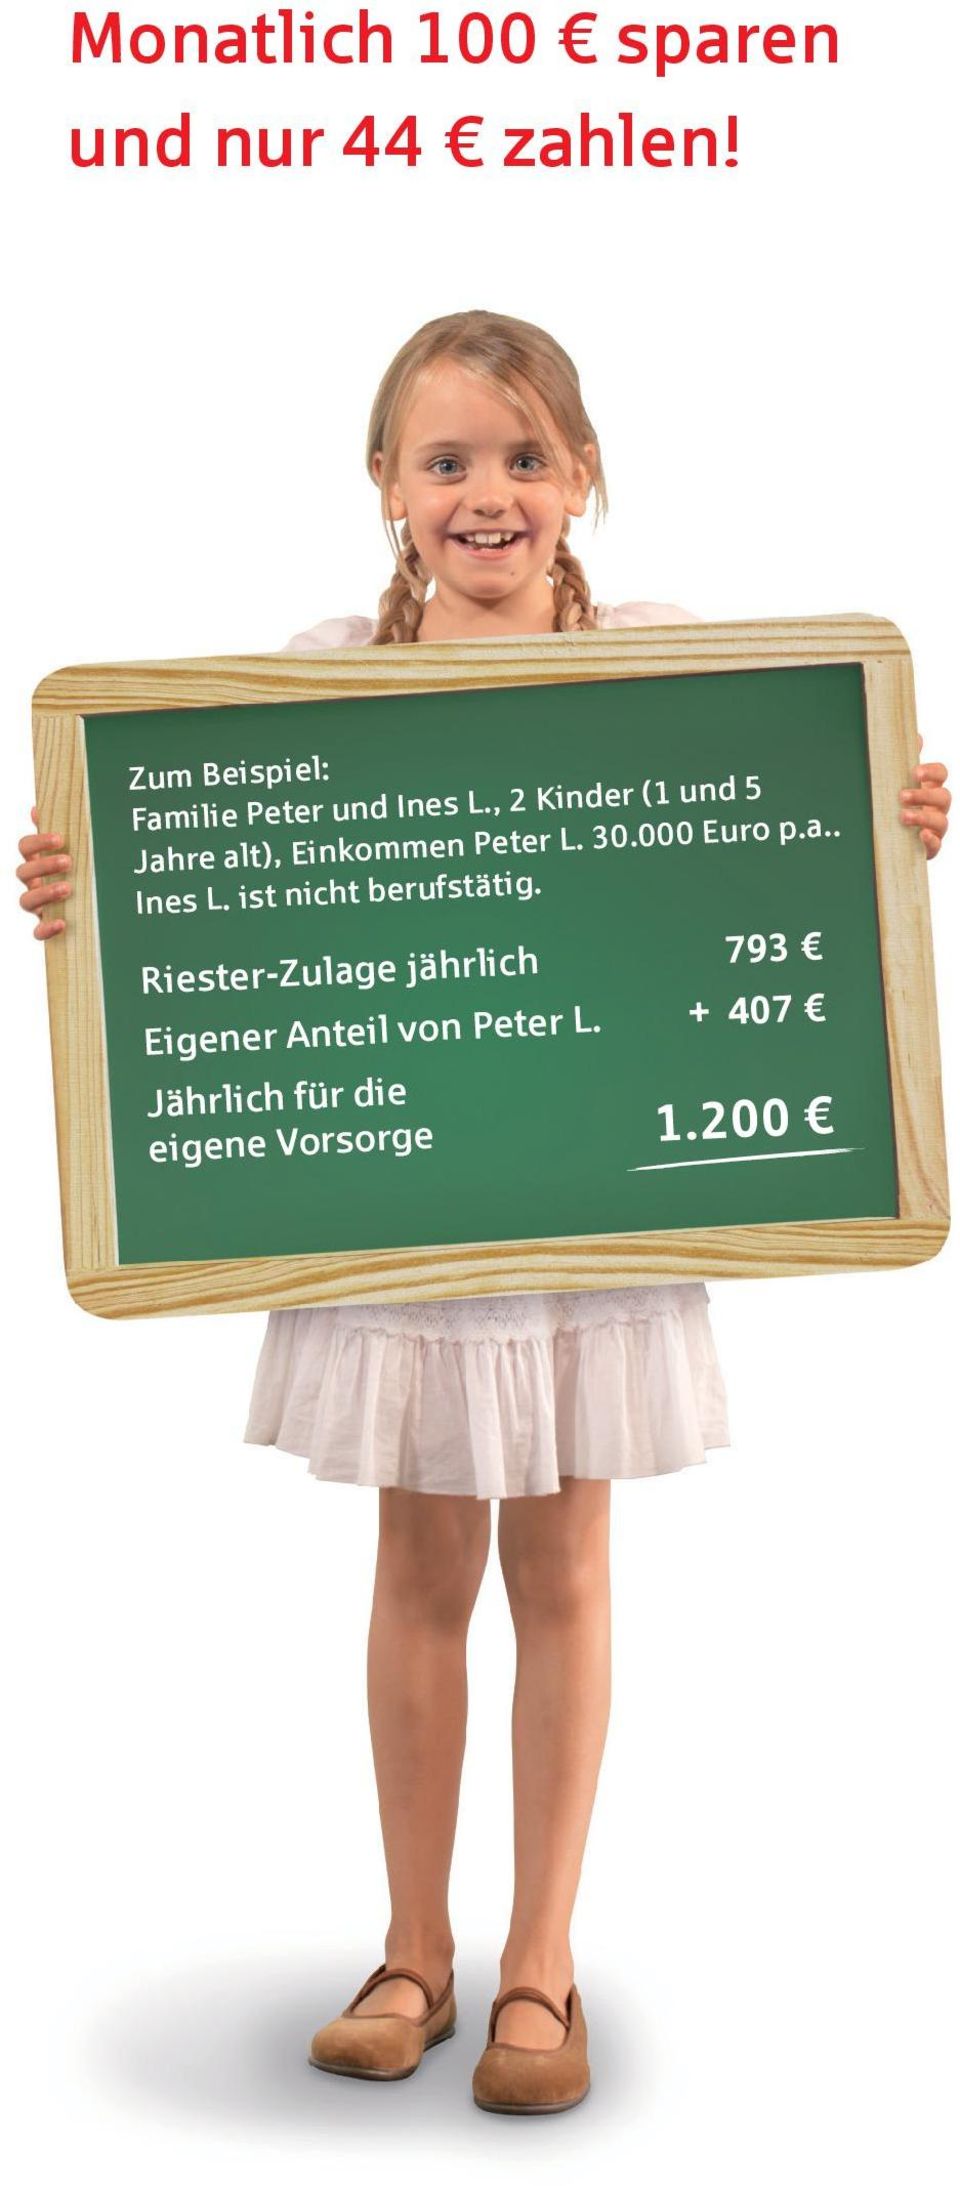 , 2 Kinder (1 und 5 Jahre alt), Einkommen Peter L. 30.000 Euro p.a.. Ines L.